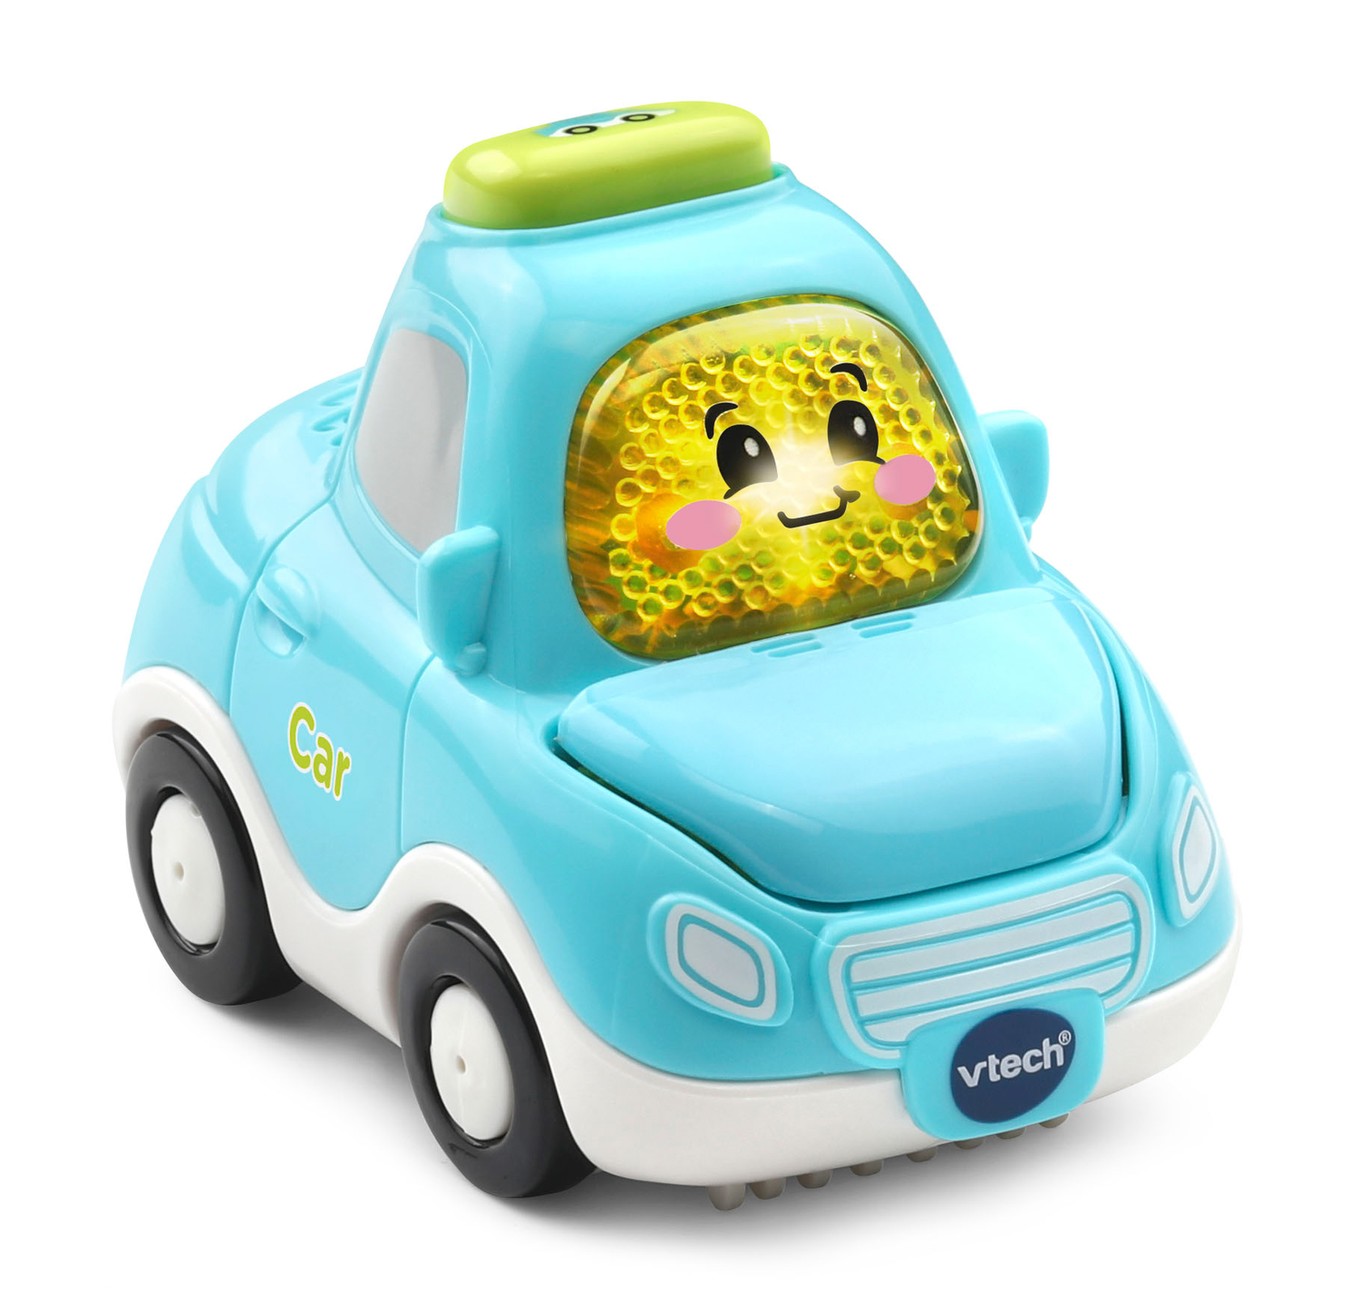 Toddler Toys │ Go! Go! Smart Wheels® │ Car │ VTech®